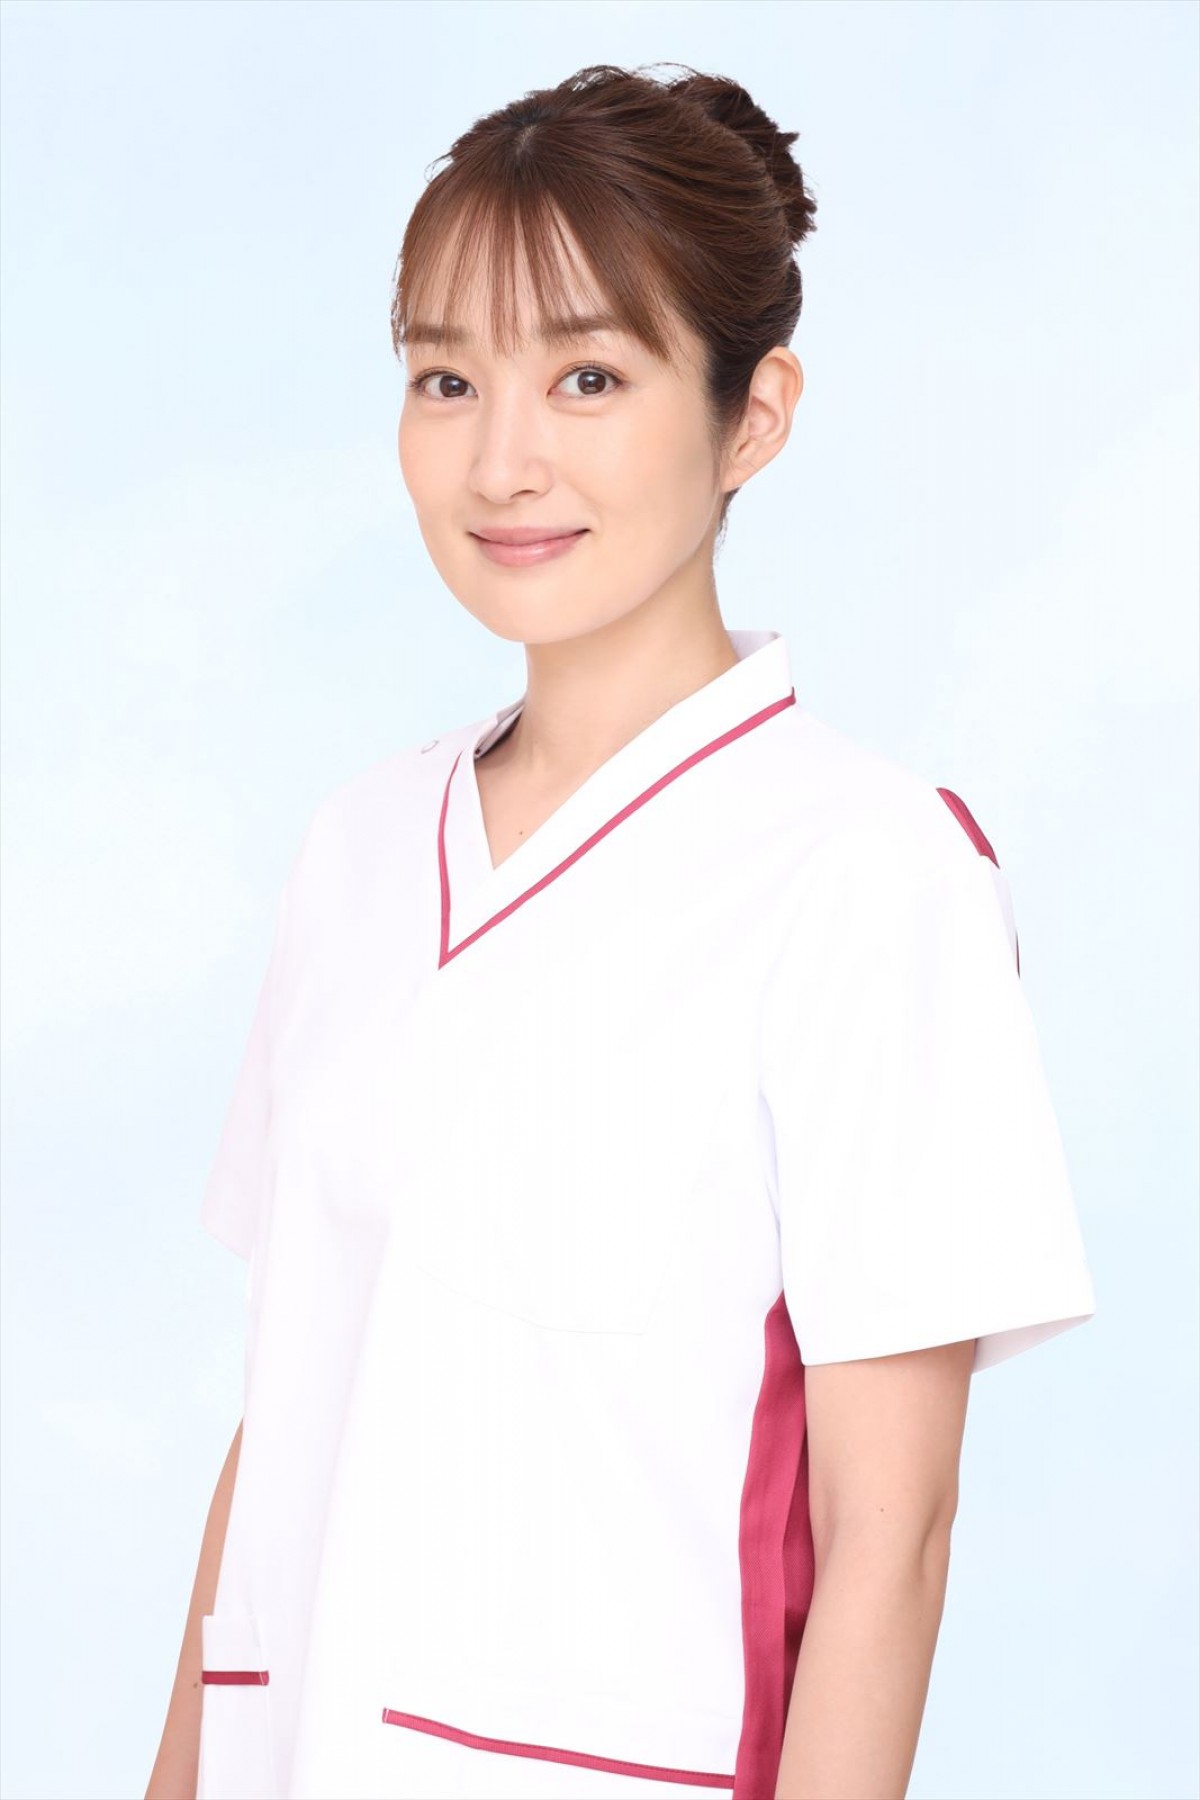 ドラマ『PICU 小児集中治療室』で看護師・羽生仁子を演じる高梨臨